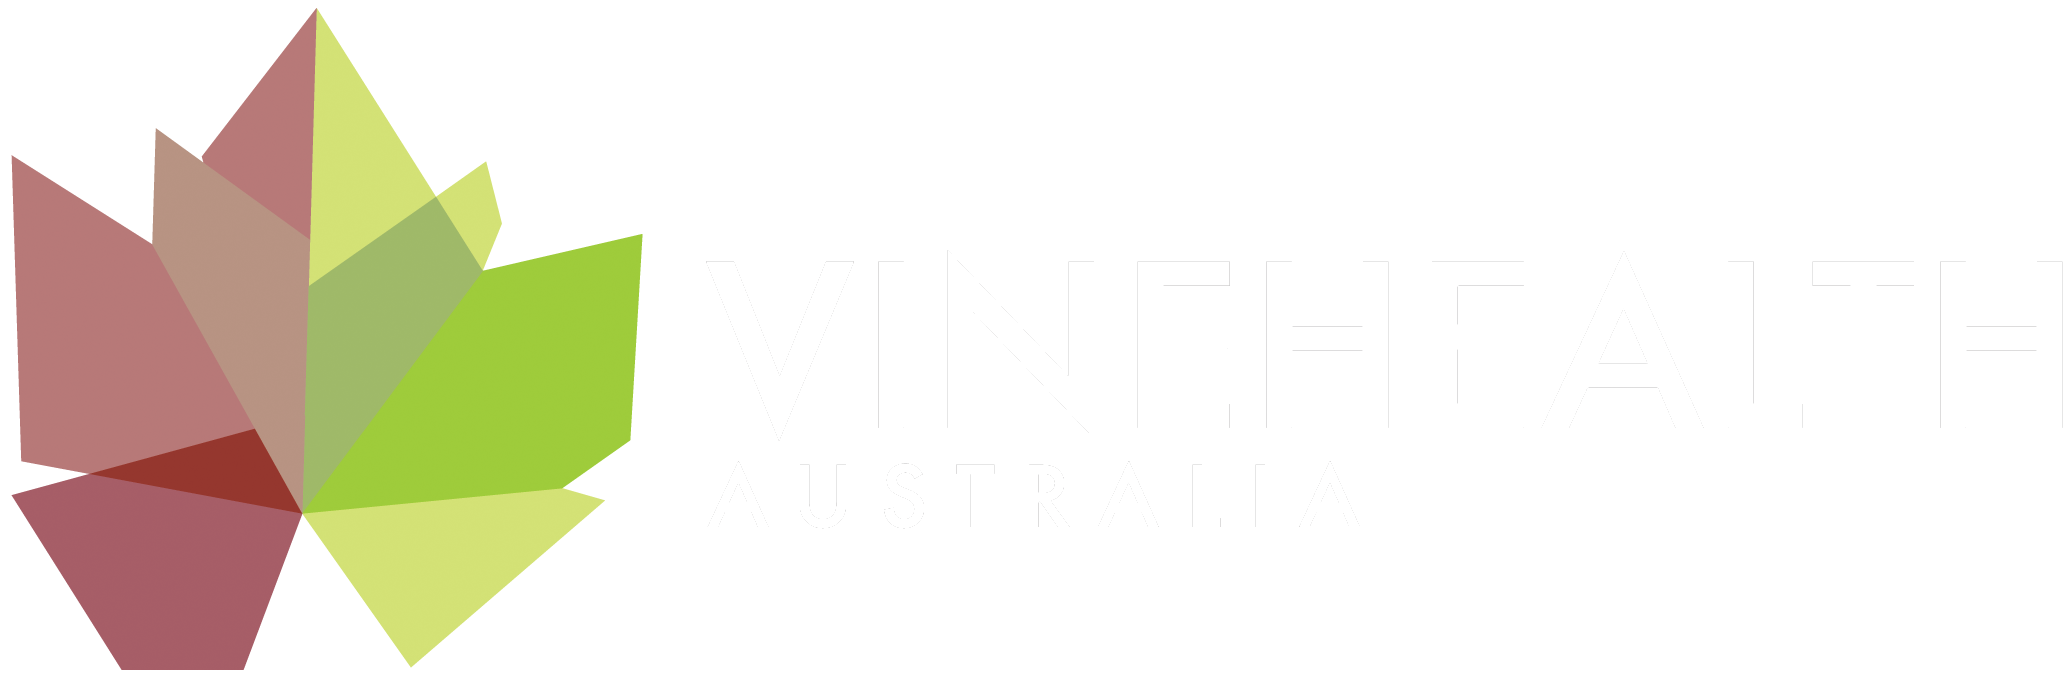 Vinehealth logo